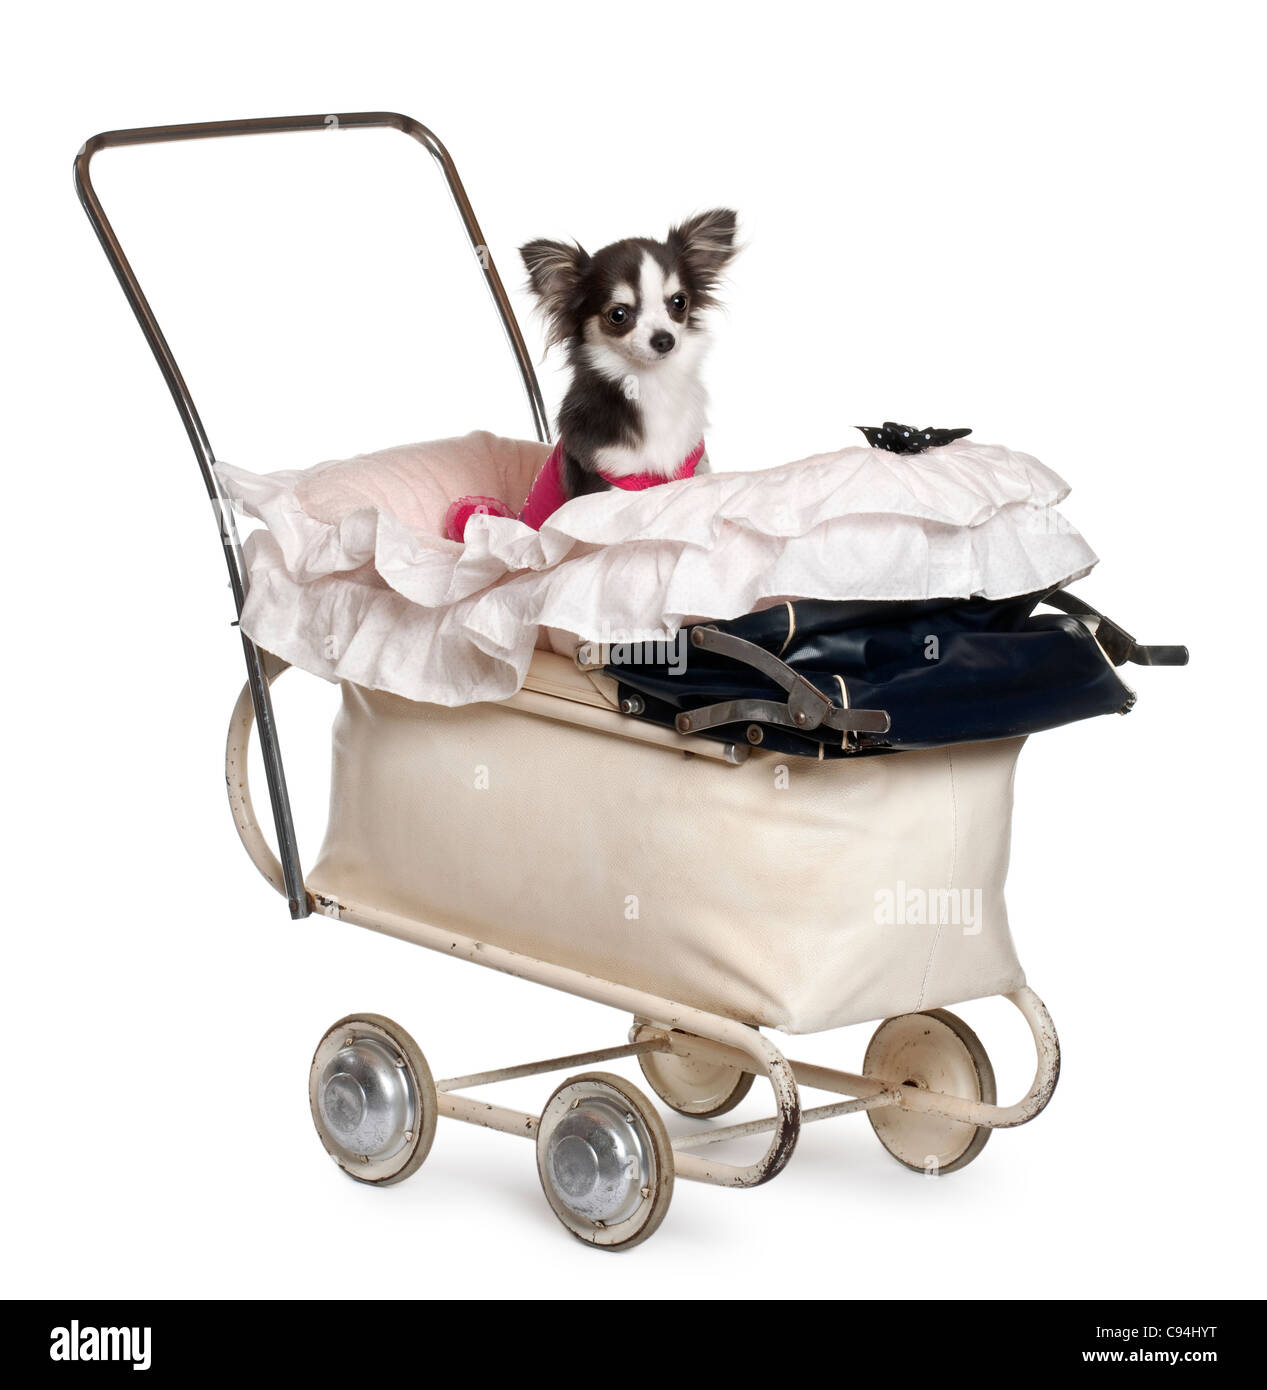 Chihuahua, 1 ans, dans la poussette de bébé in front of white background Banque D'Images